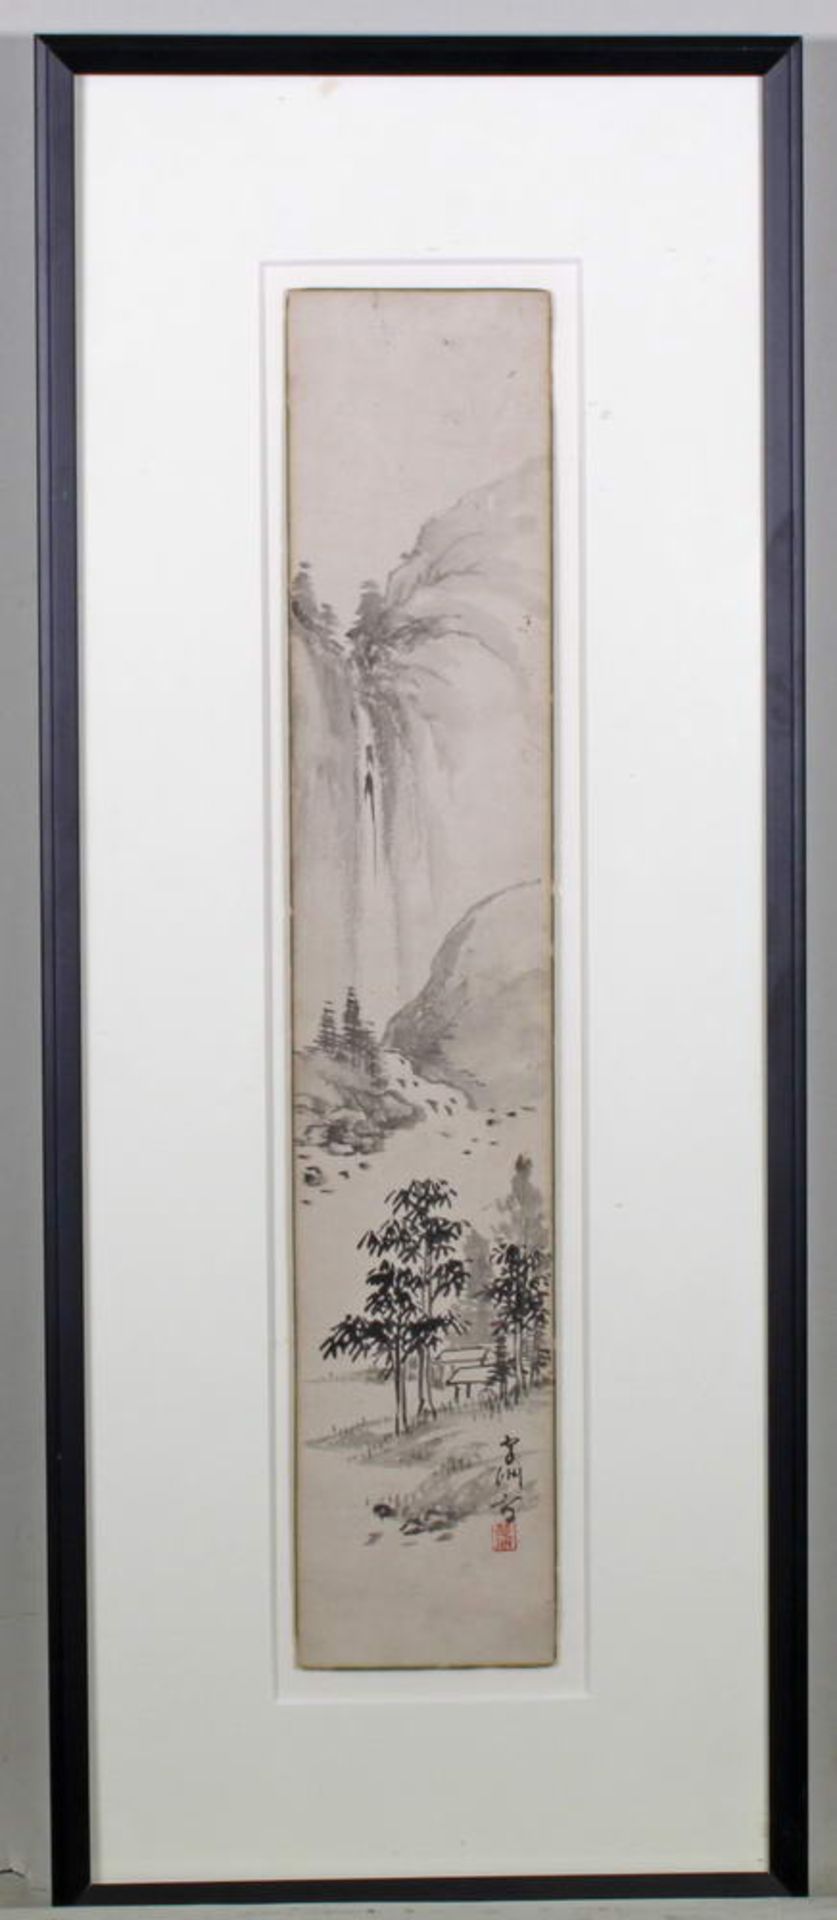 Tuschezeichnung, "Wasserfall", Japan, 20. Jh., 35.5 x 7 cm, unter Glas gerahmt- - -25.00 % buyer's - Bild 4 aus 6